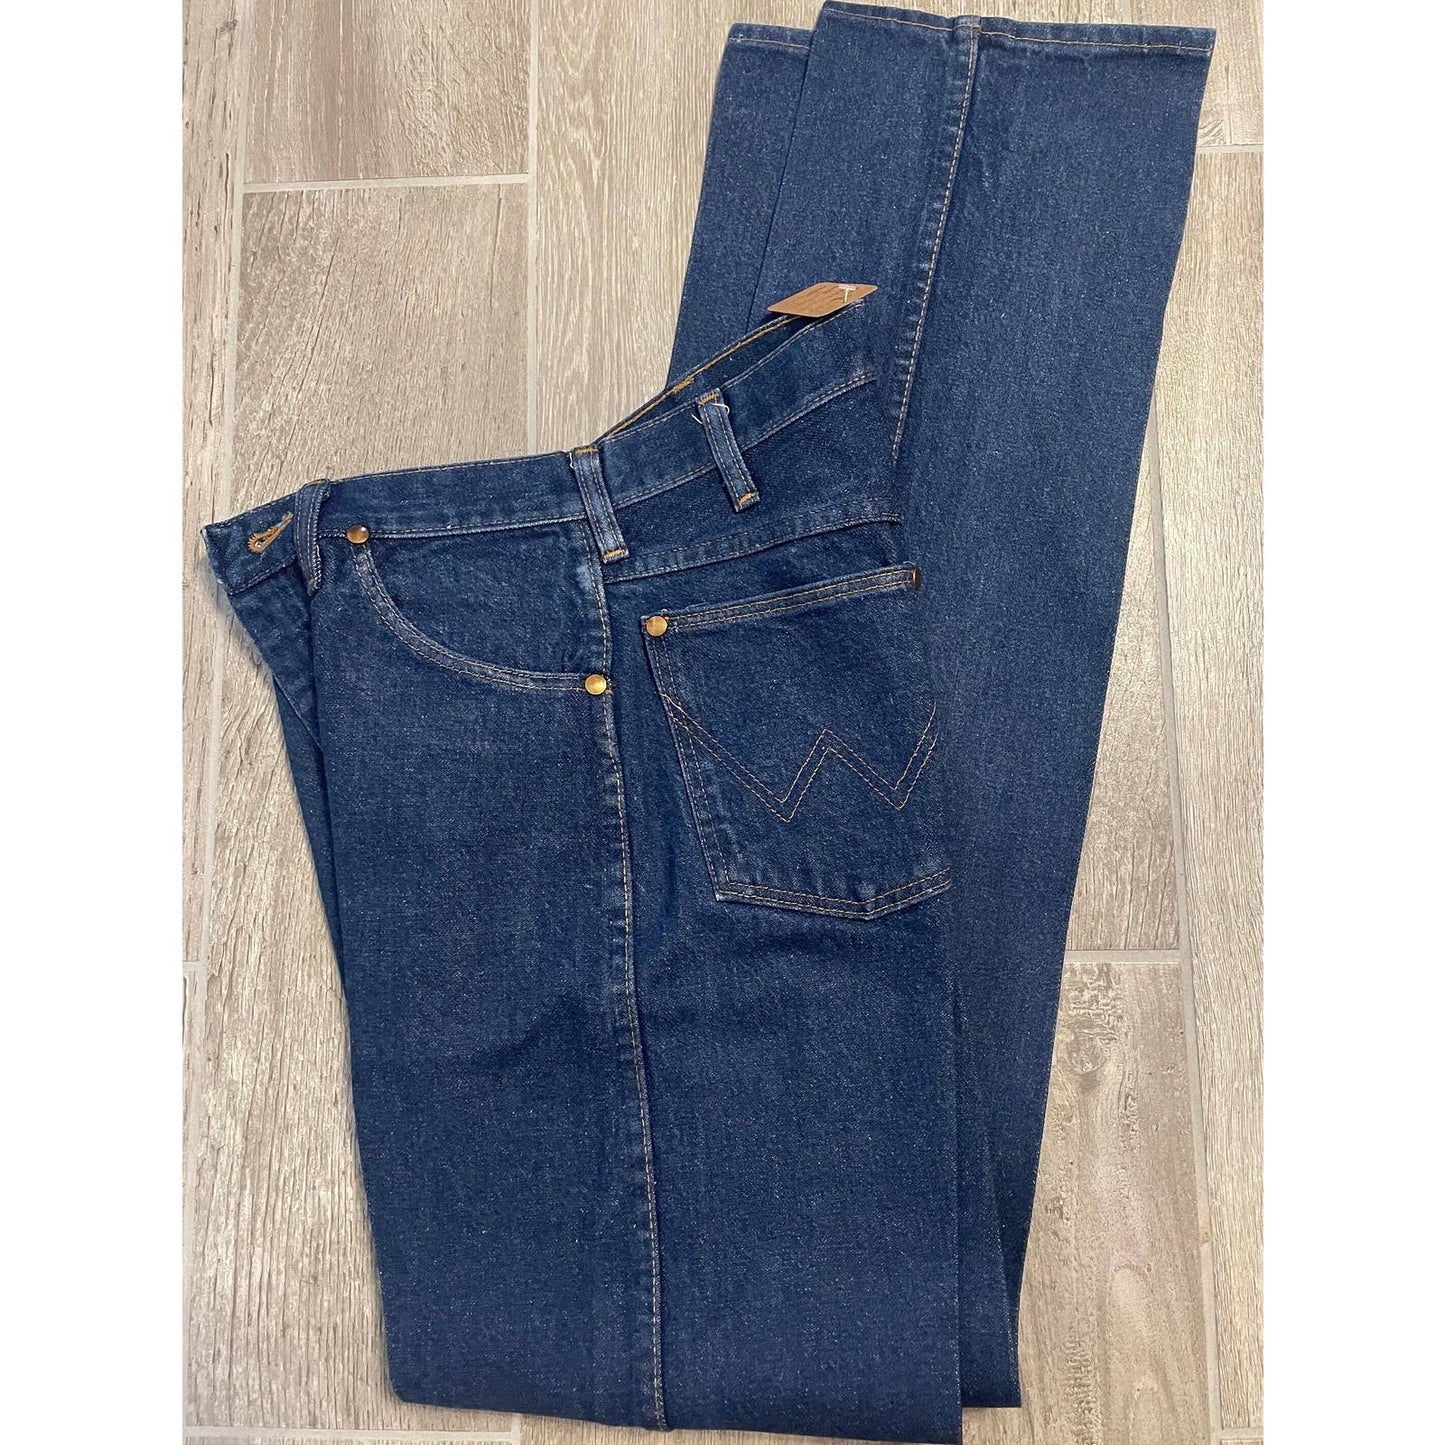 Vintage 90s Wrangler Denim Jeans